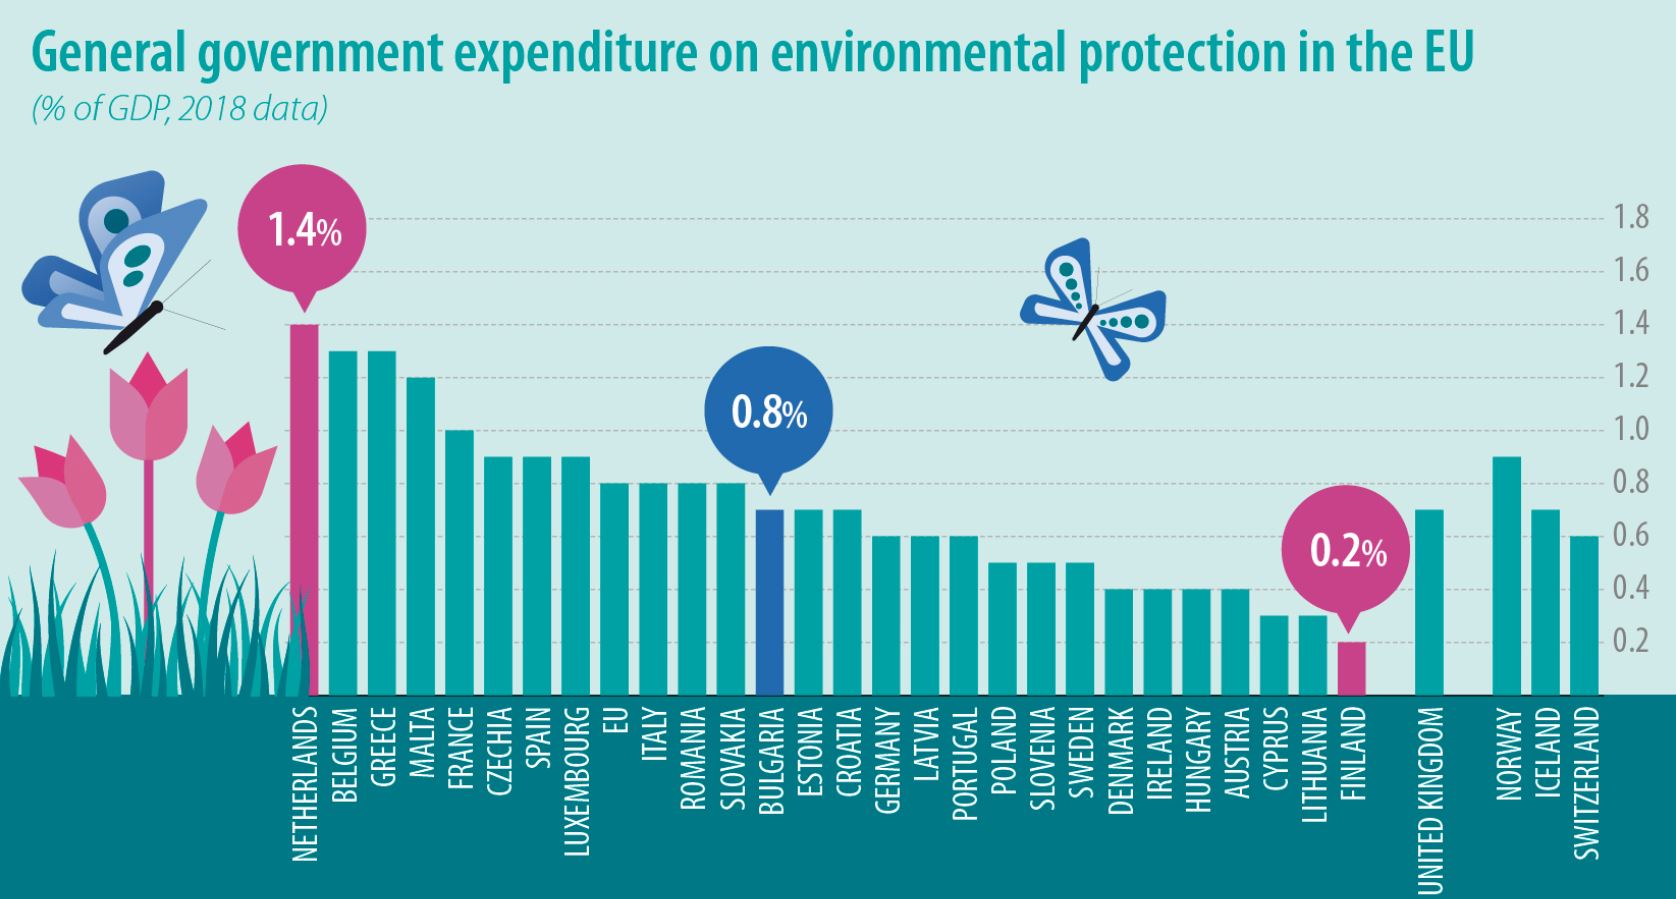 Holandija najviše izdvaja za zaštitu životne sredine u EU 2